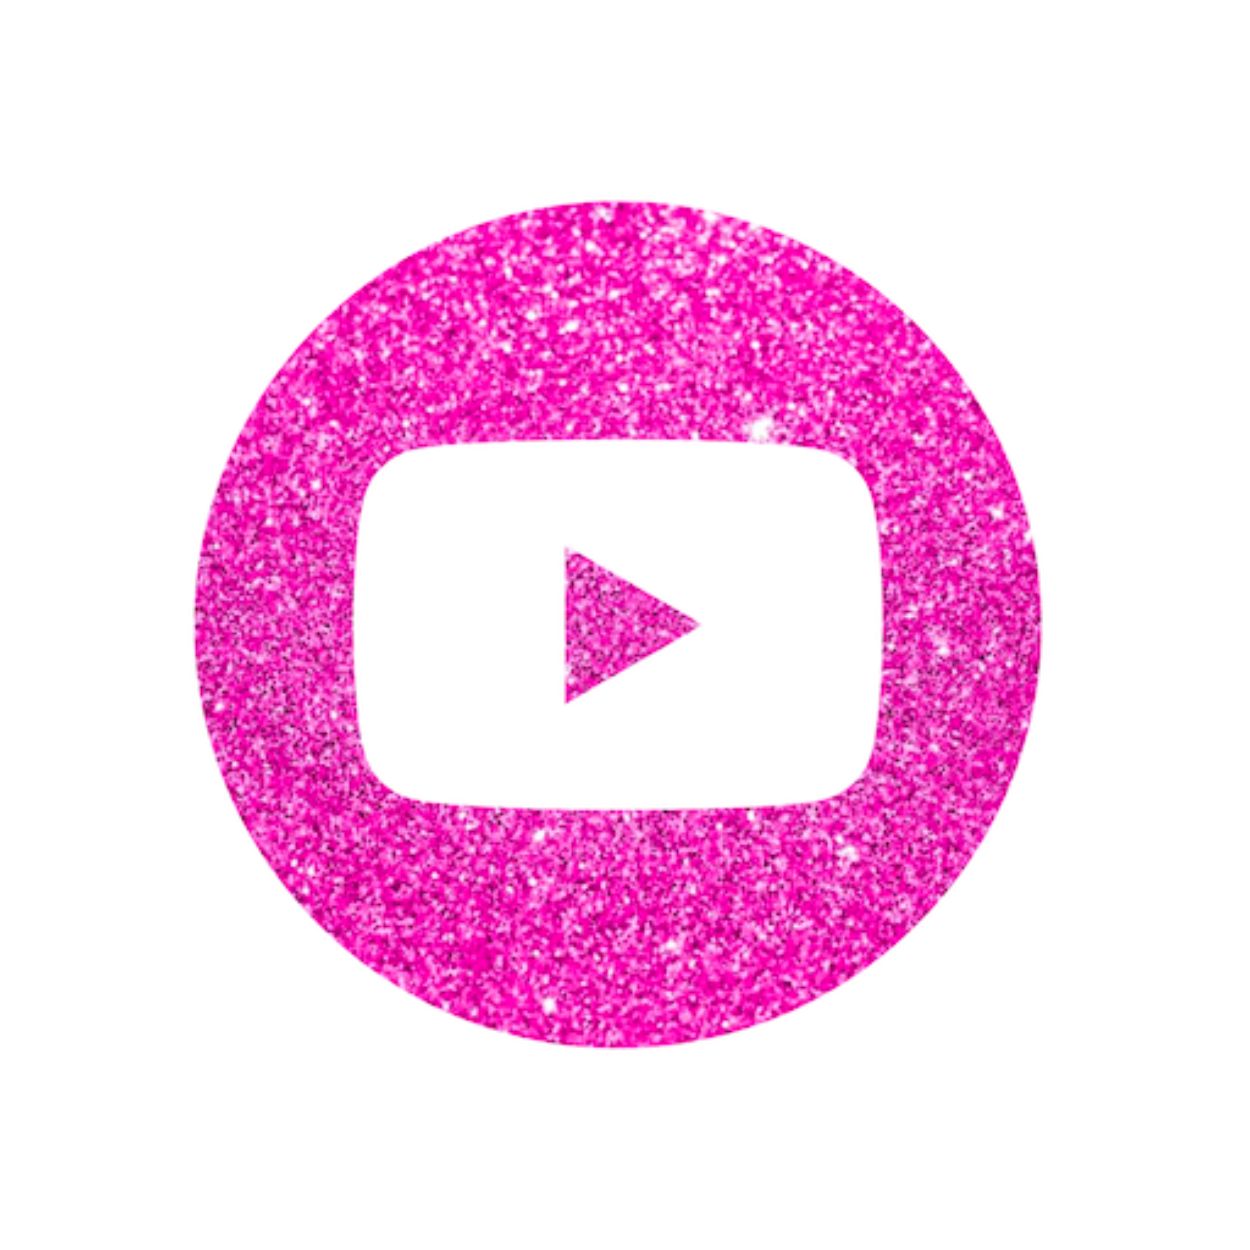 glitter body art youtube channel